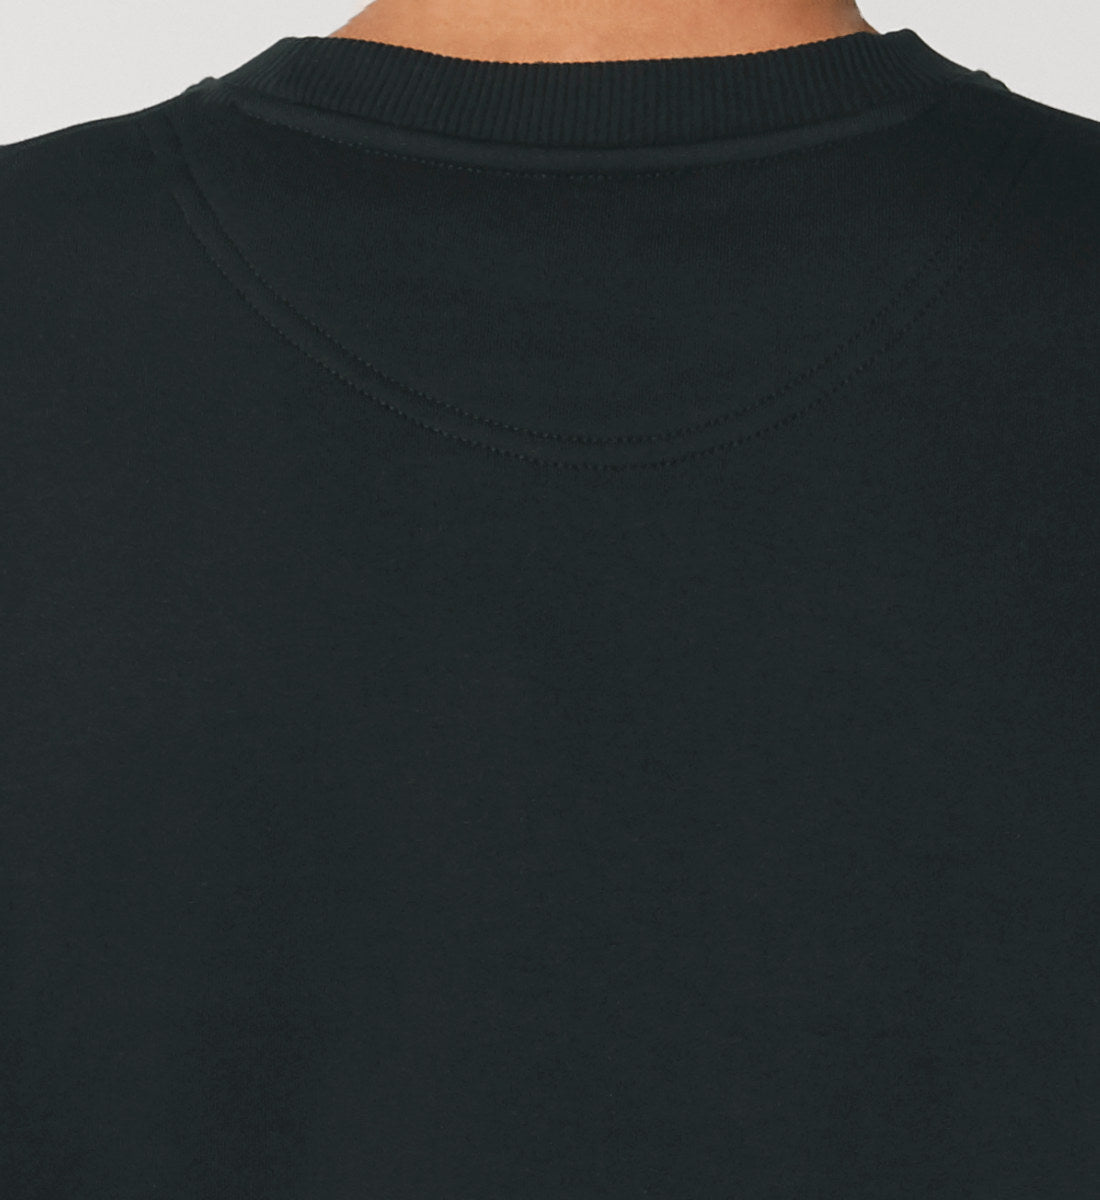 Schwarzes Sweatshirt Unisex für Frauen und Männer bedruckt mit dem Design der Roger Rockawoo Kollektion Hell yeah surf